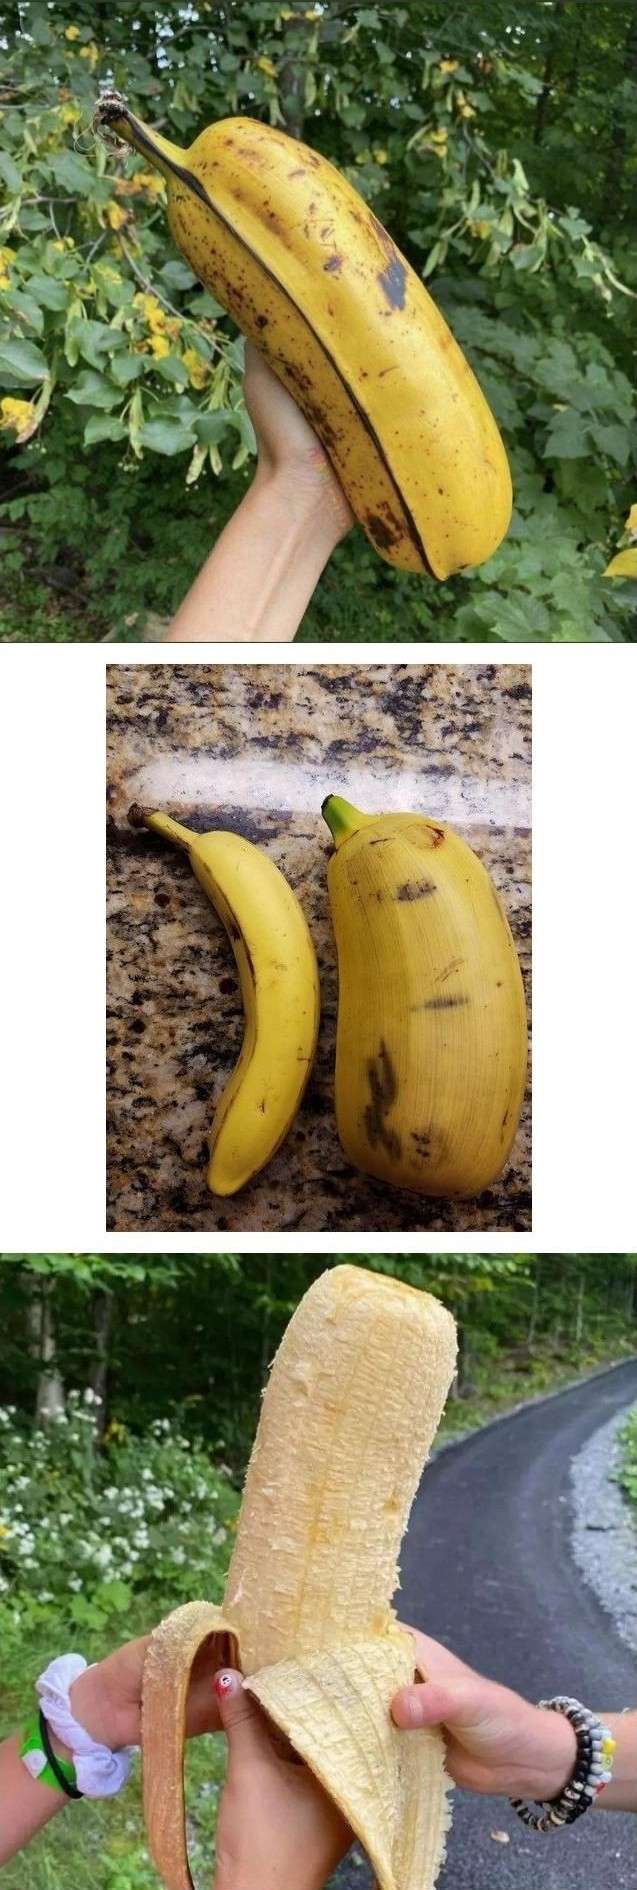 실제로 있다는 초거대 바나나 품종